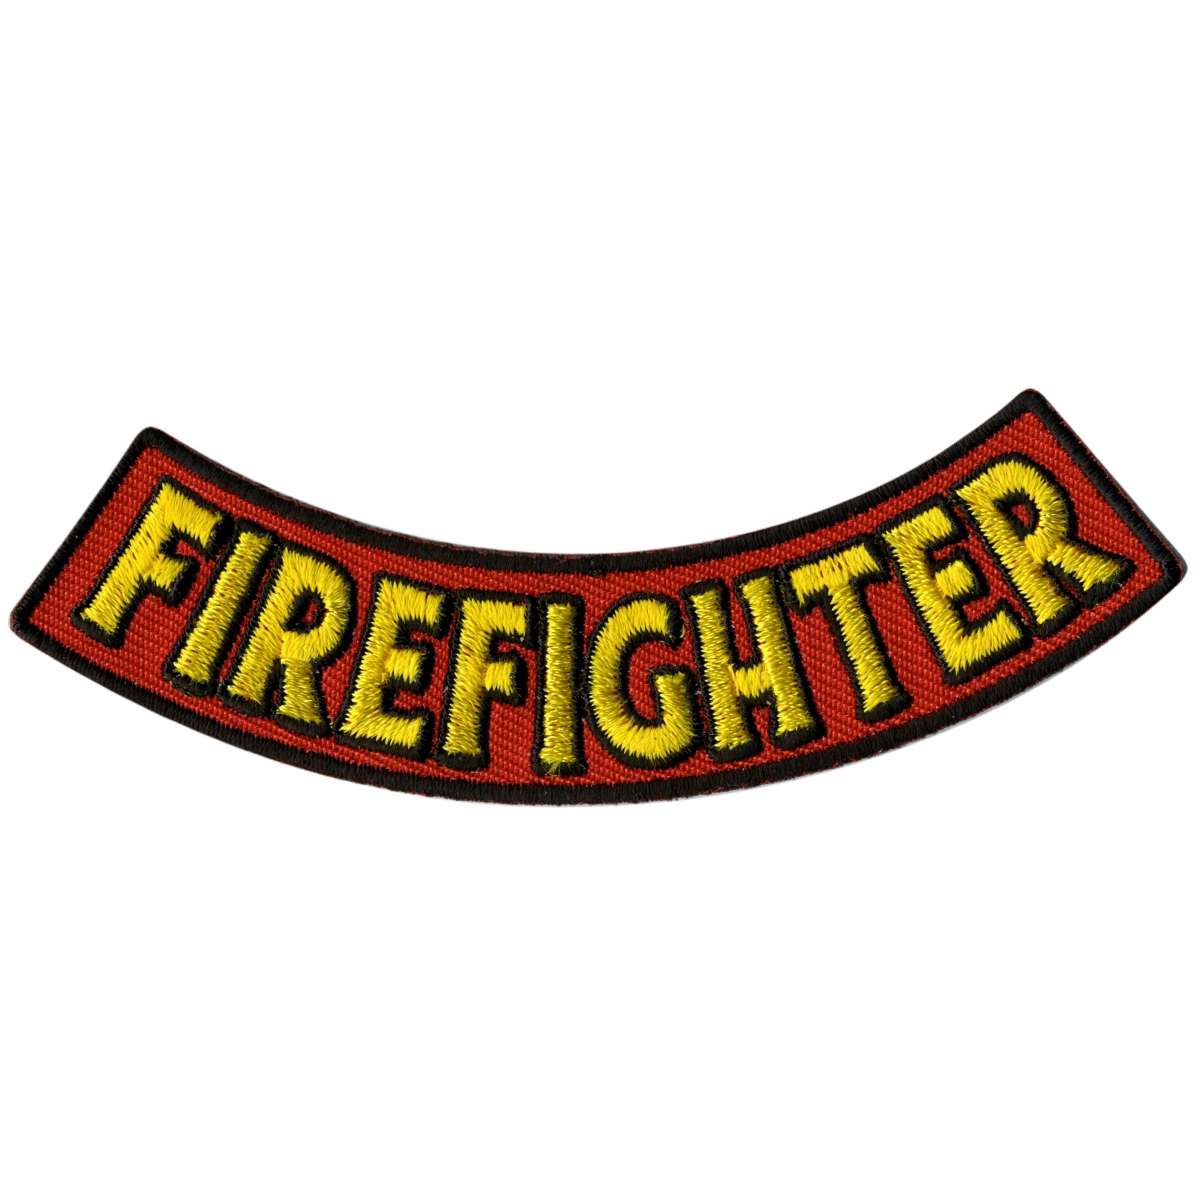 Hot Leathers Firefighter 4” X 1” Bottom Rocker Patch PPM5132